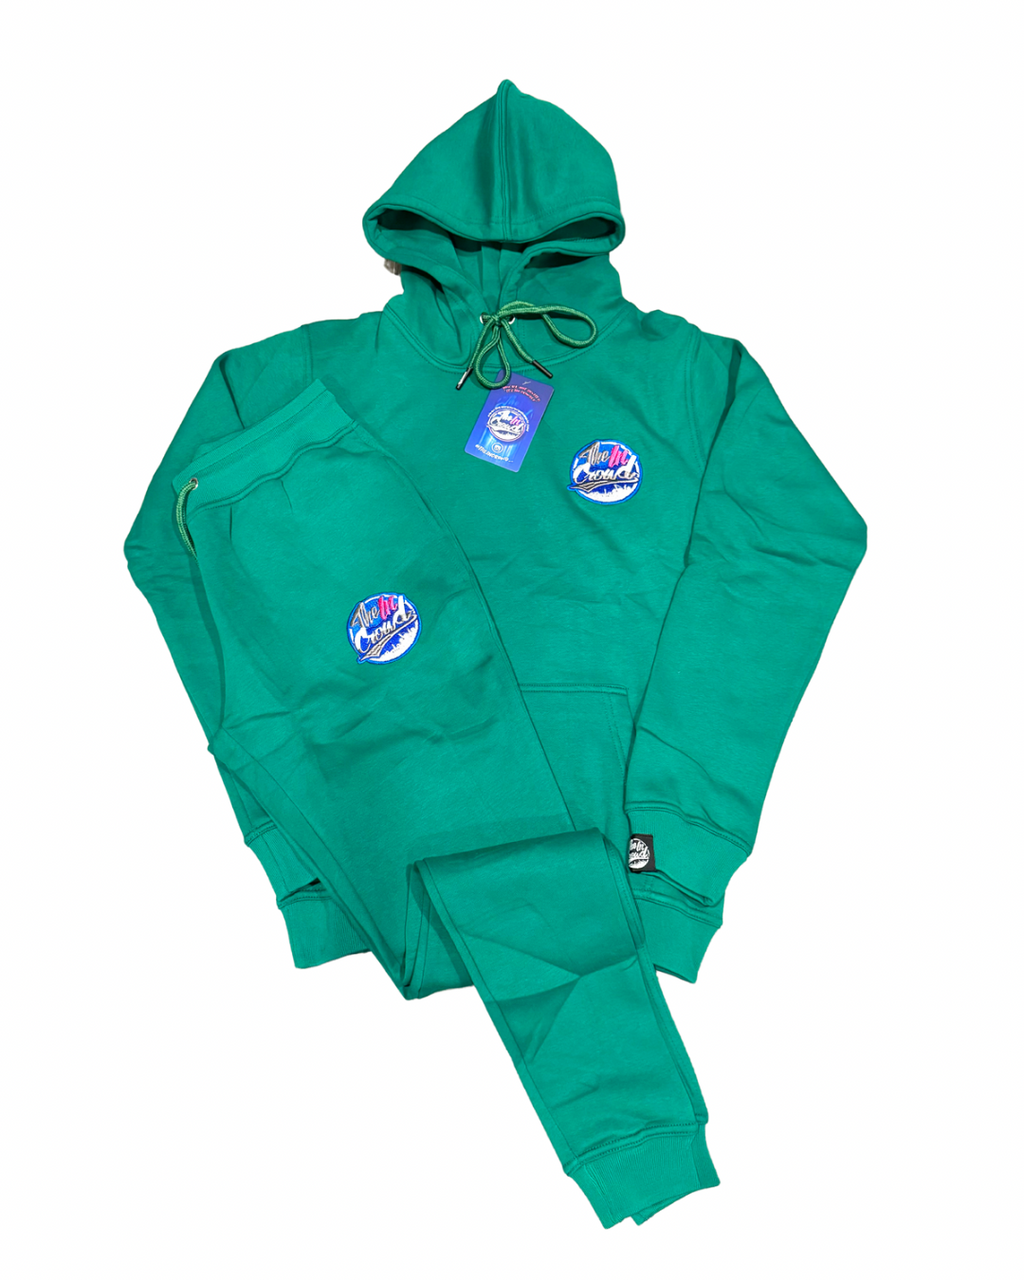 Women’s Green Sweatsuit